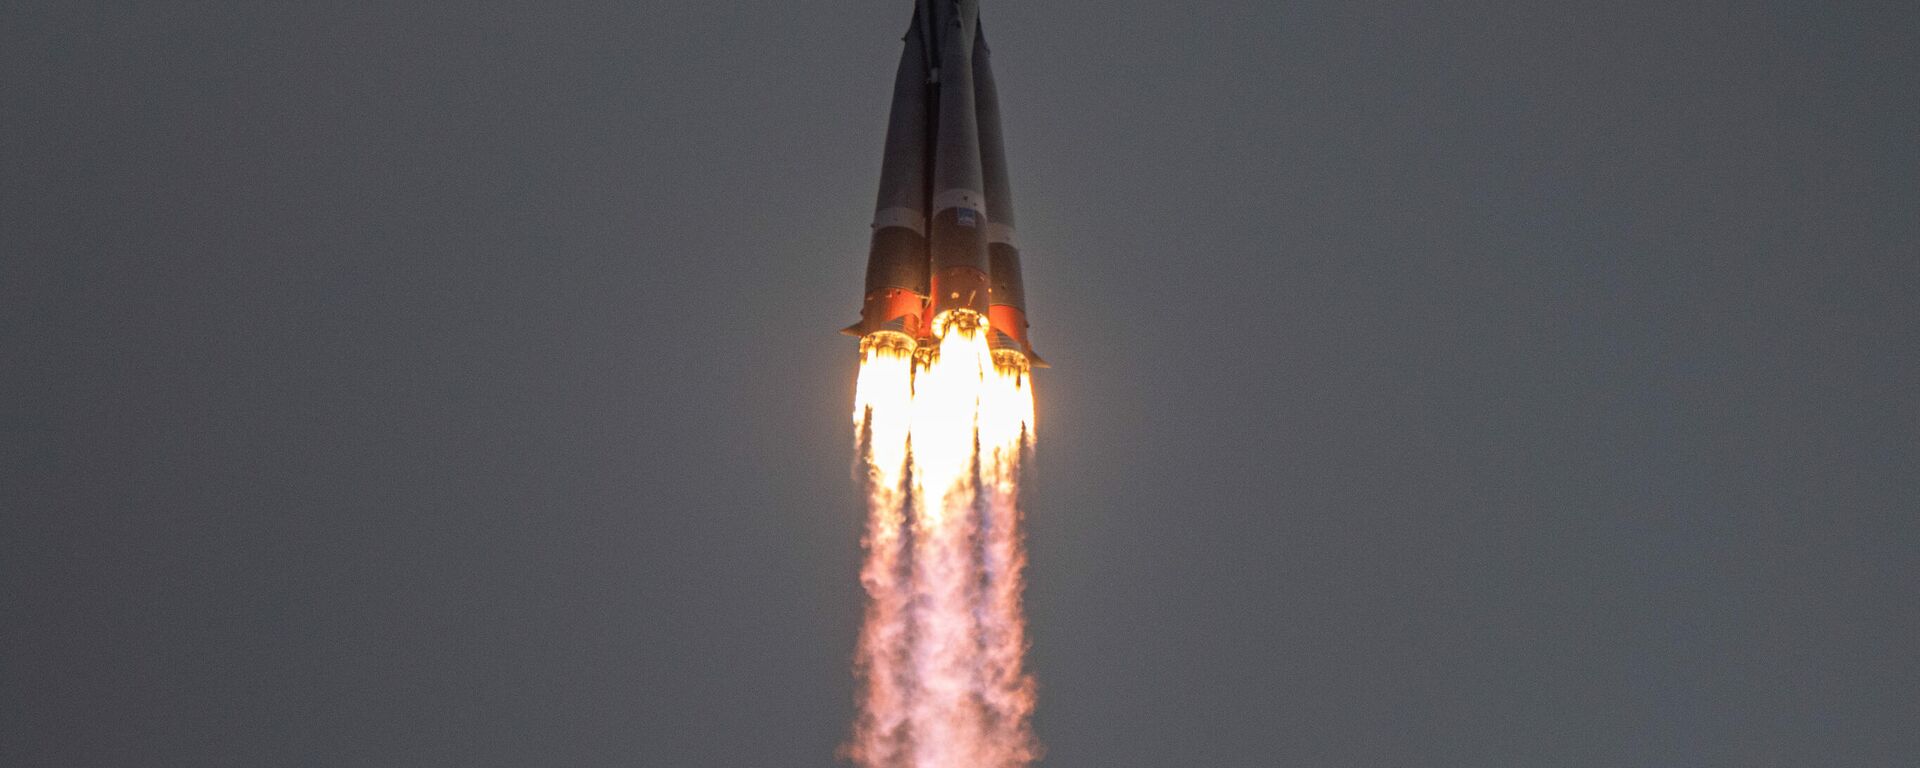 Lanzamiento del cohete Soyuz 2.1b el abril de 2021 - Sputnik Mundo, 1920, 28.05.2021